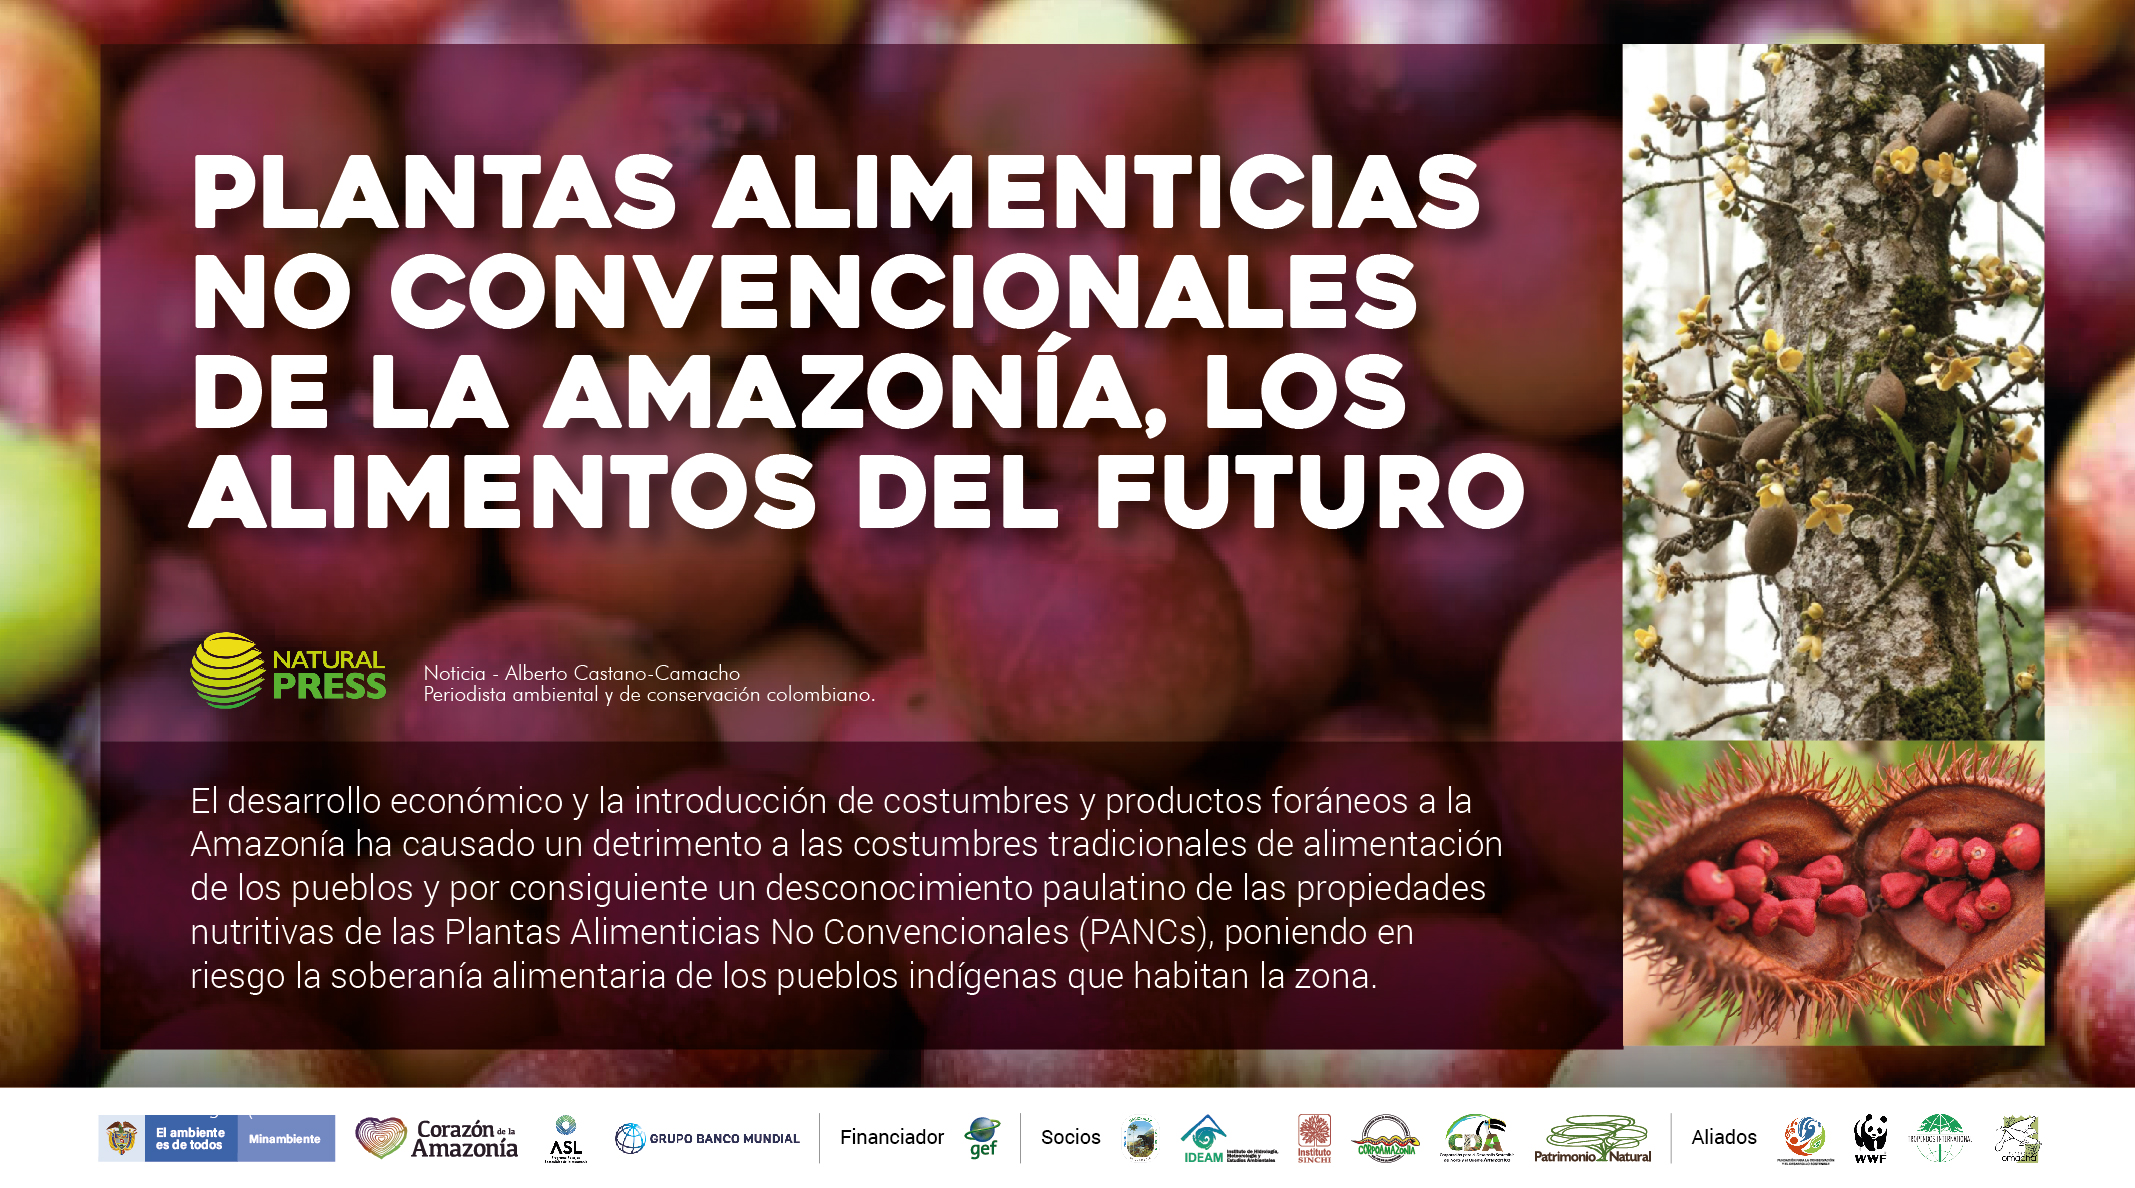 Corazón de la Amazonía on Twitter: "Plantas Alimenticias No Convencionales  de la Amazonía, los alimentos del futuro. Ver más: https://t.co/AOytBYBhqh  https://t.co/WQl4Nqtqmg" / Twitter